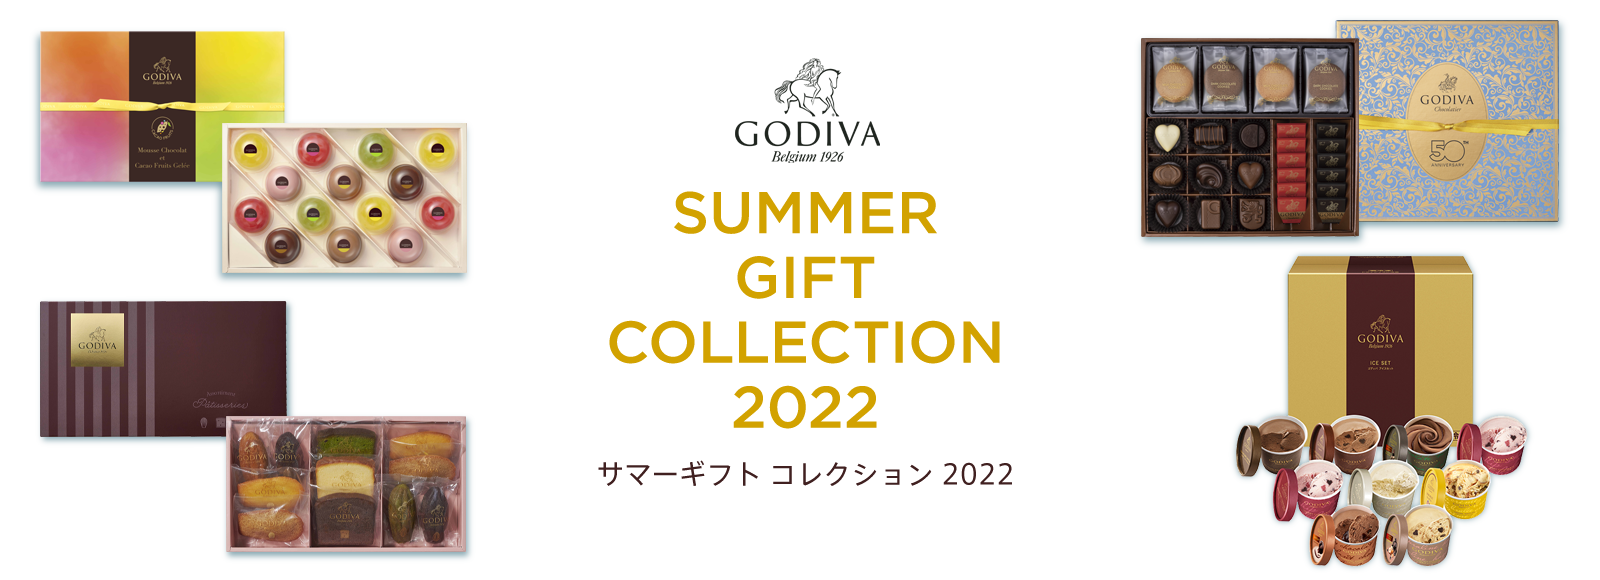 GODIVA サマーギフト コレクション 2022